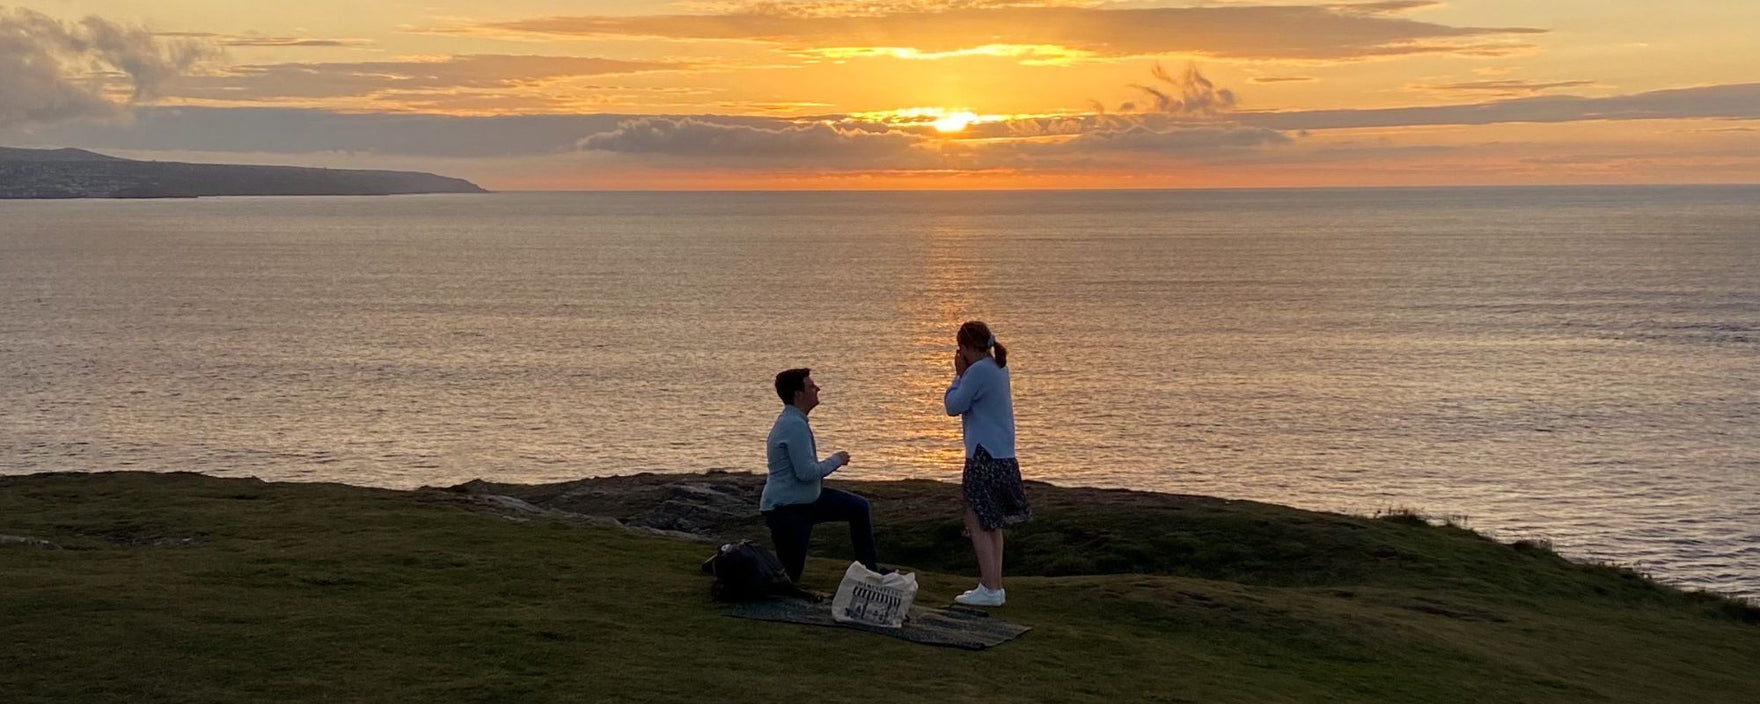 Joe & Charlotte's Cornish Proposal